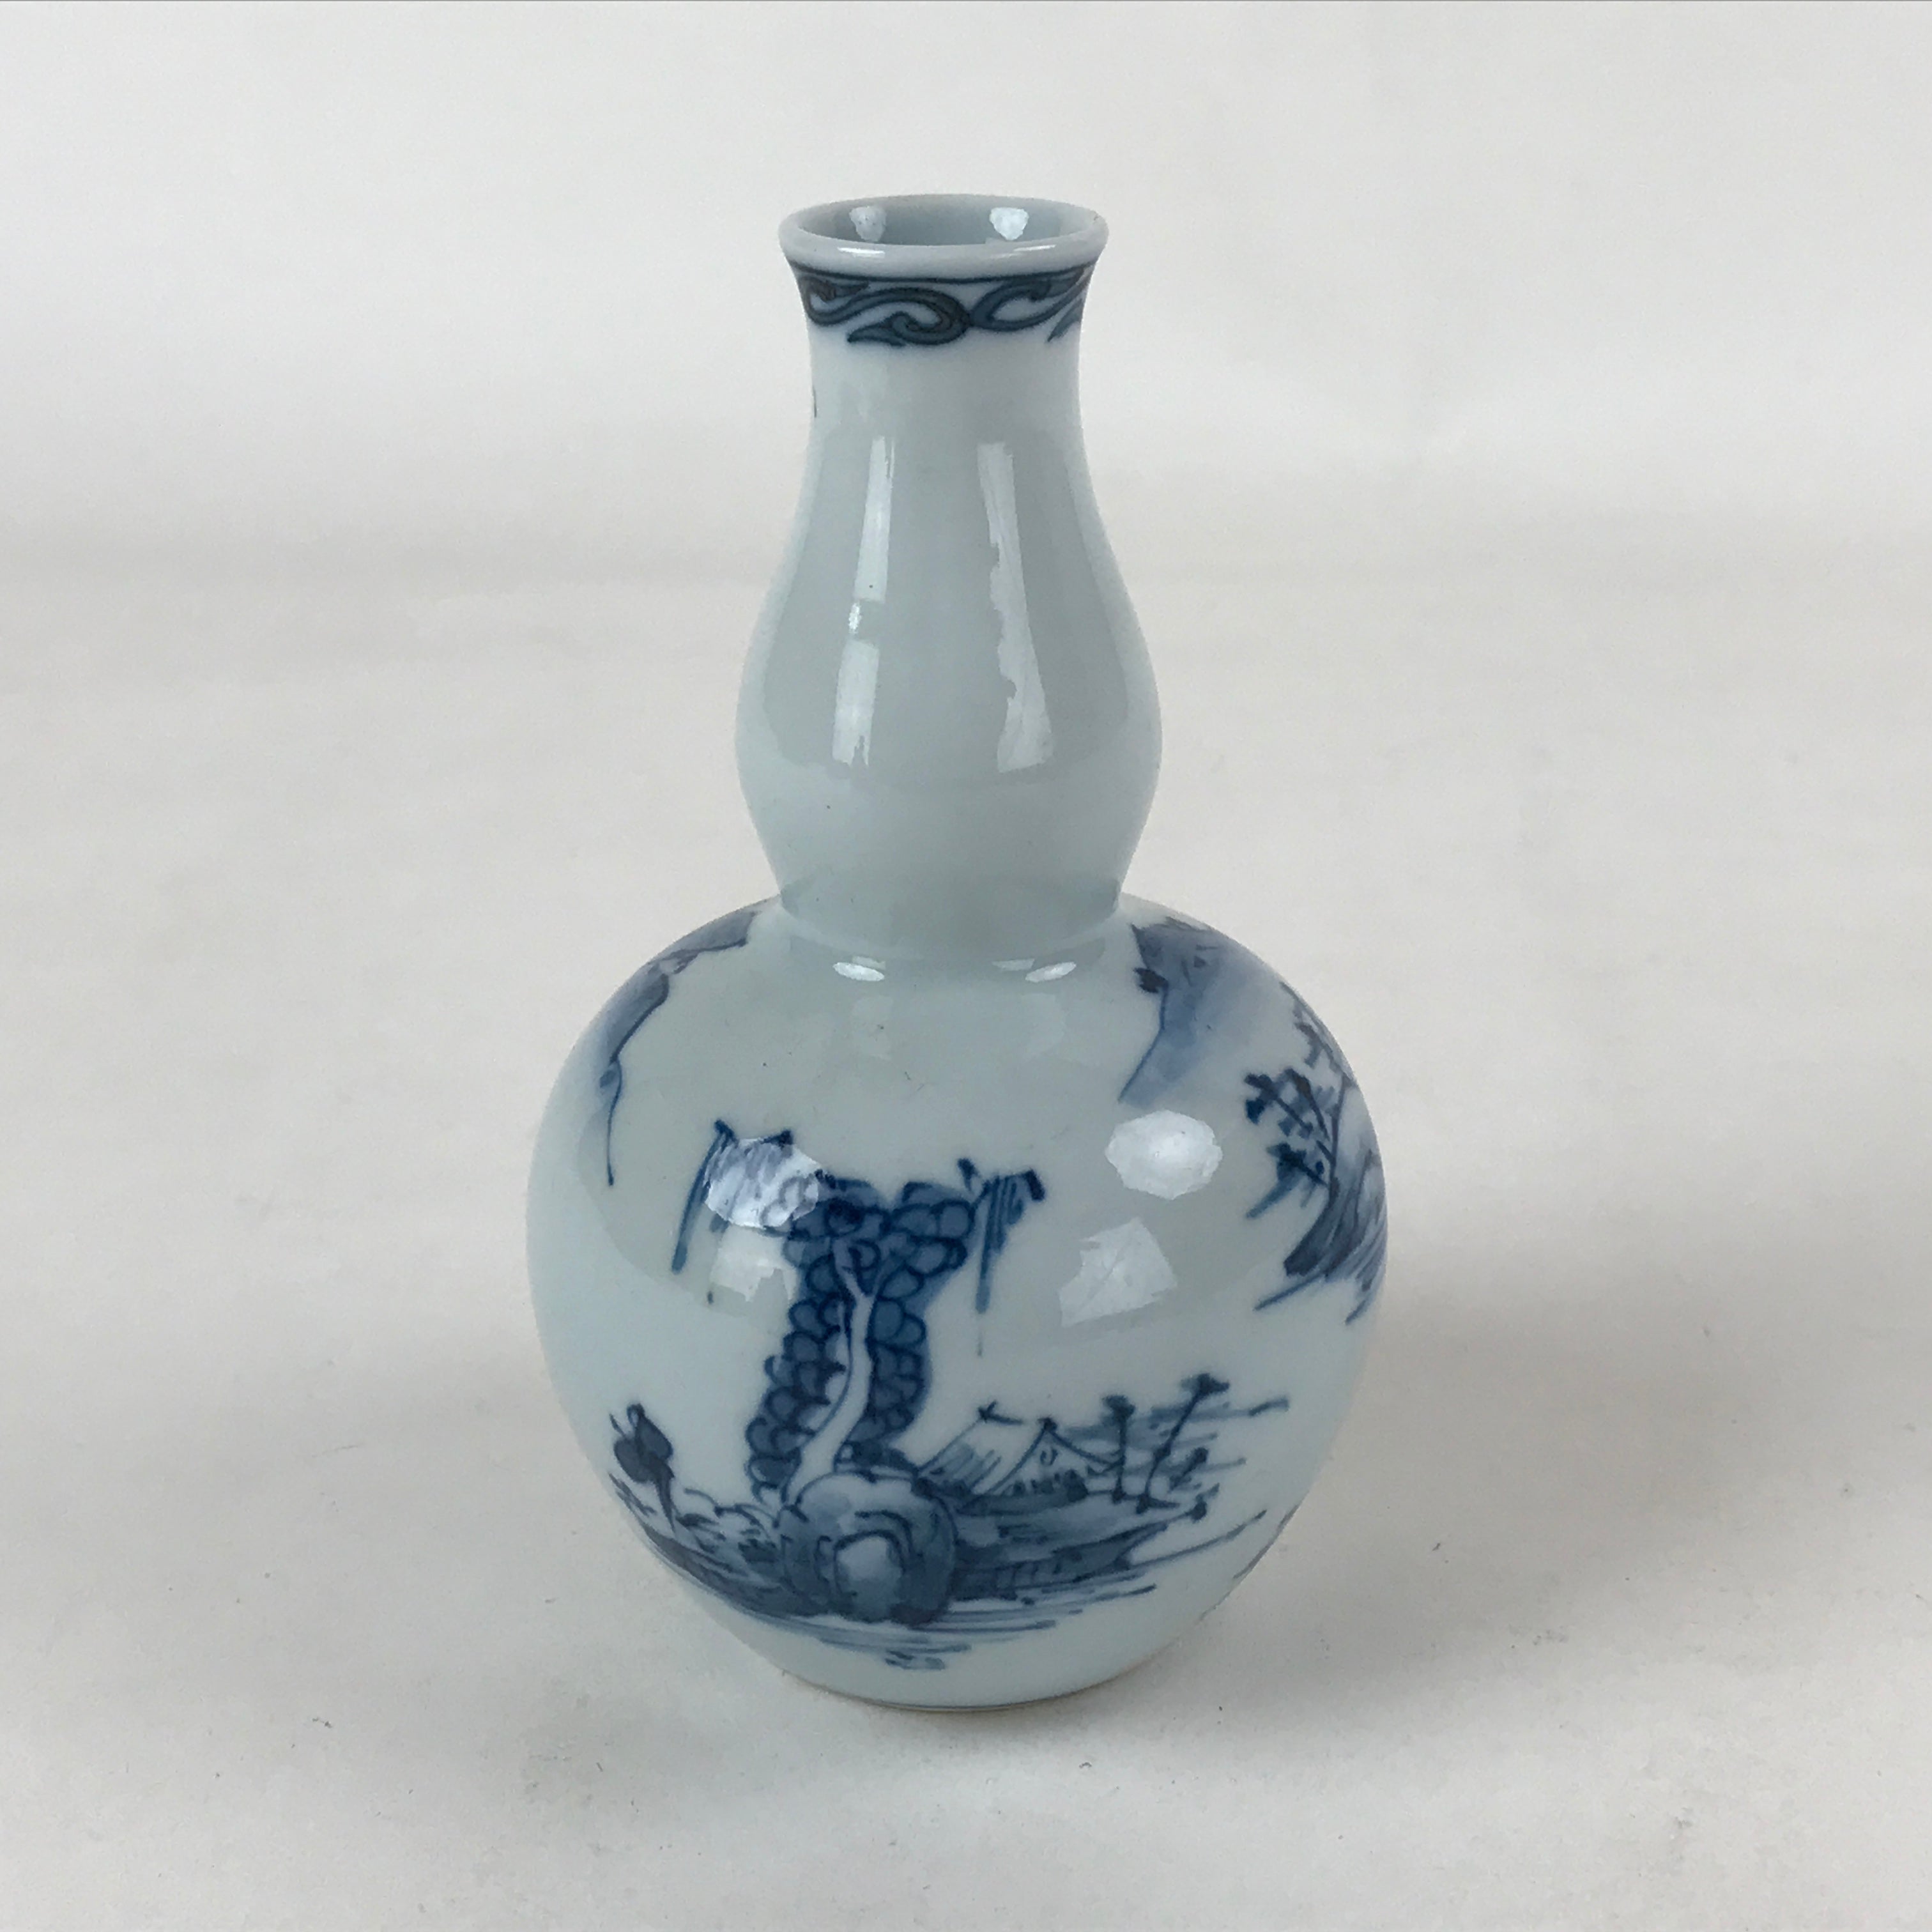 Japanese Sake Bottle Porcelain Tokkuri Vtg Arita Ware White Blue Landscape TS595